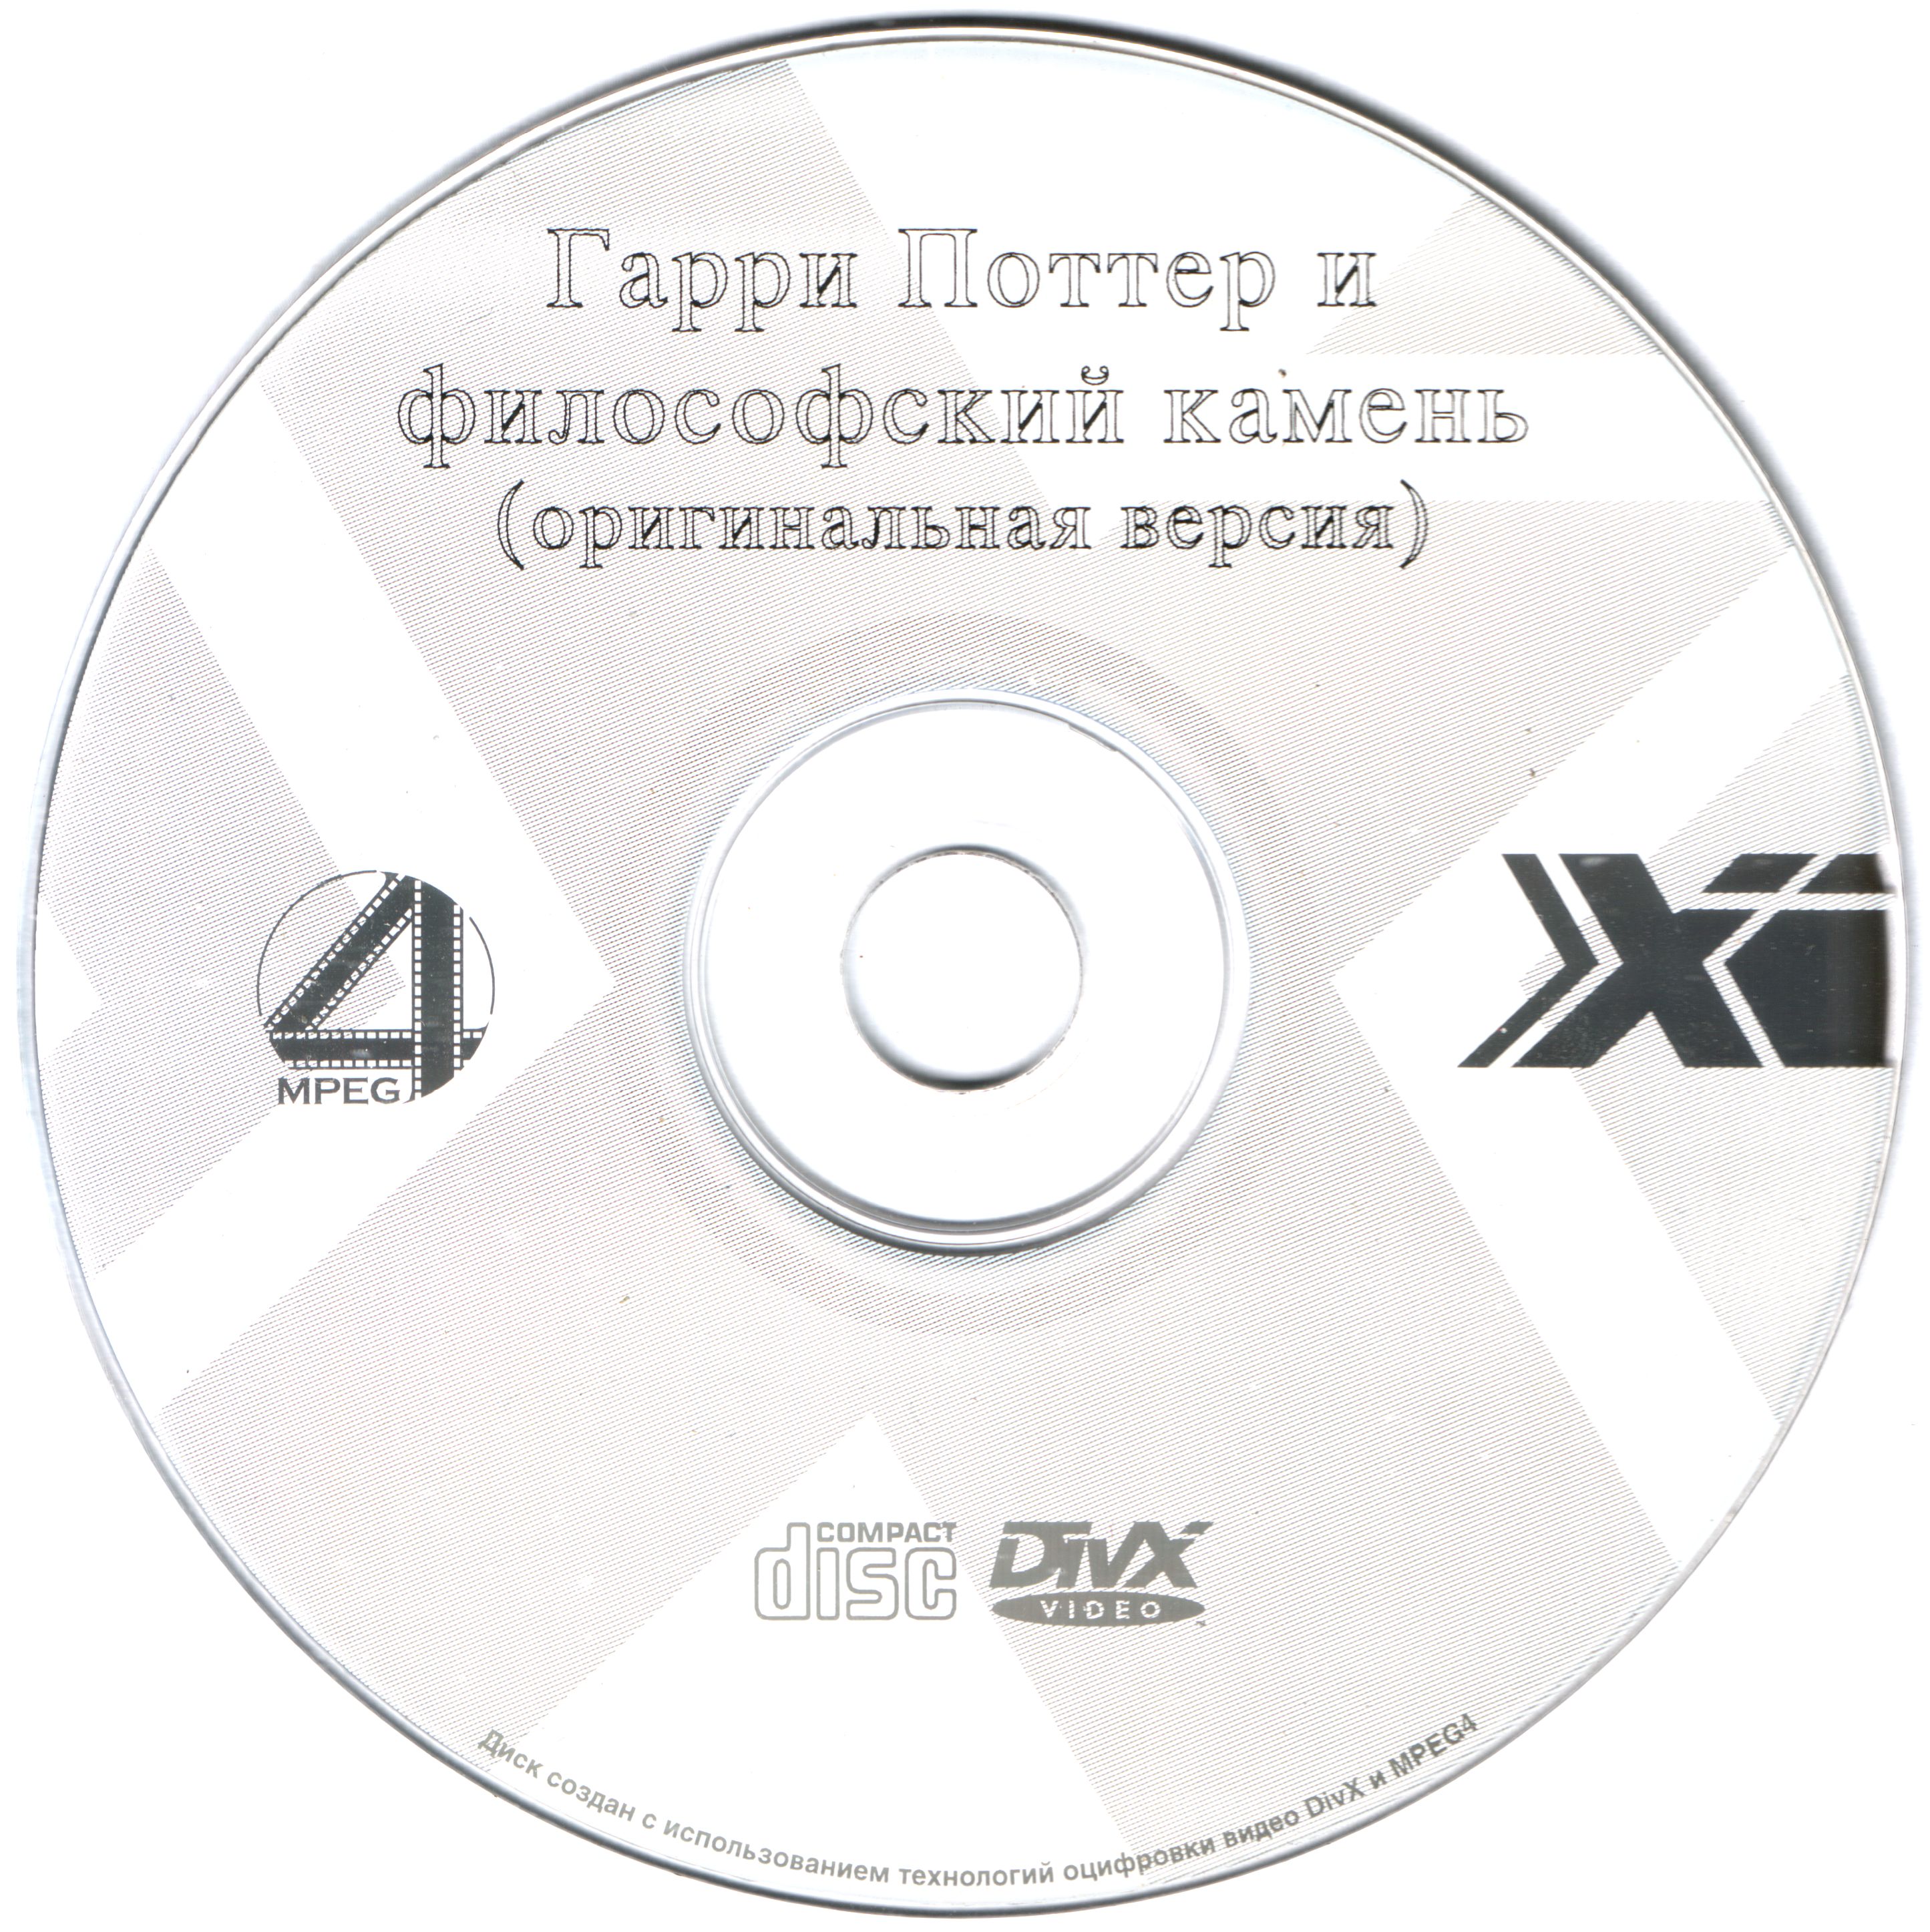 Грэмми 2001 обложка CD. G.P.I.filosovskiy.Kamen'.2001. Стоун 21 век